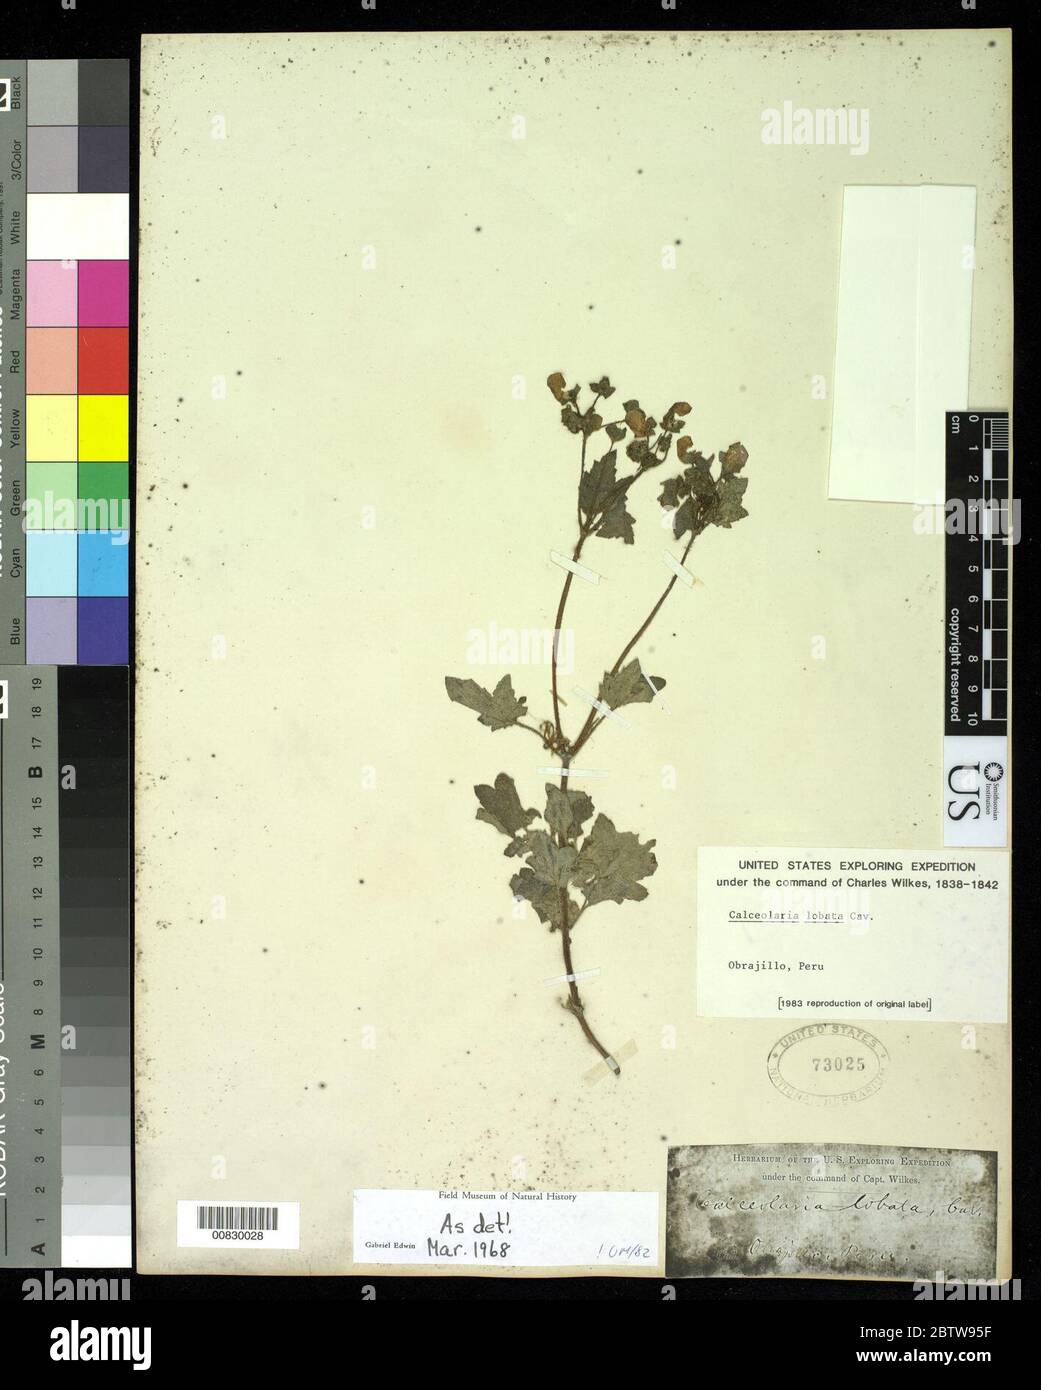 Calceolaria lobata Cav. Stock Photo